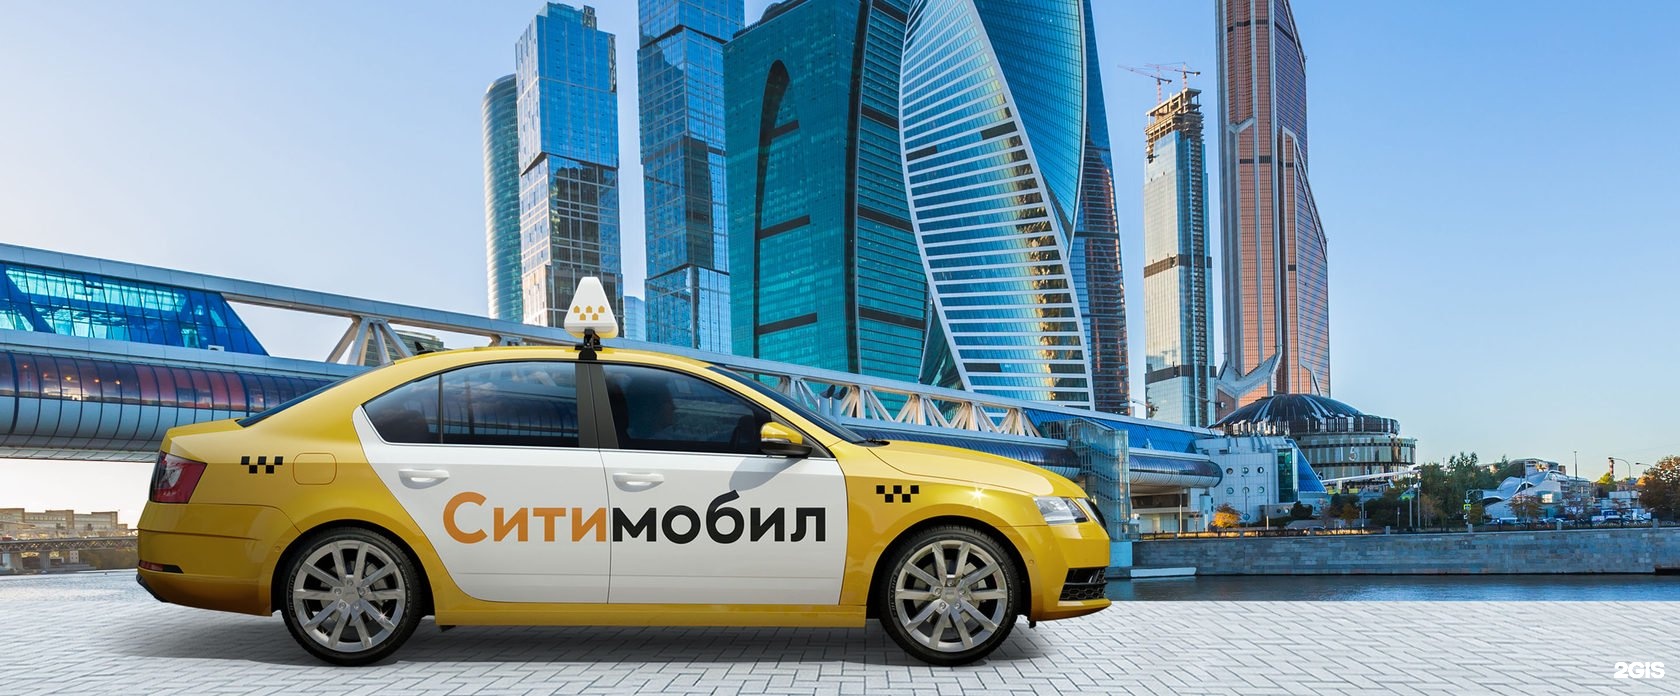 Заказать такси сити. Такси. Сити мобил. Автомобили таксопарка Ситимобил. Такси Москва Сити.